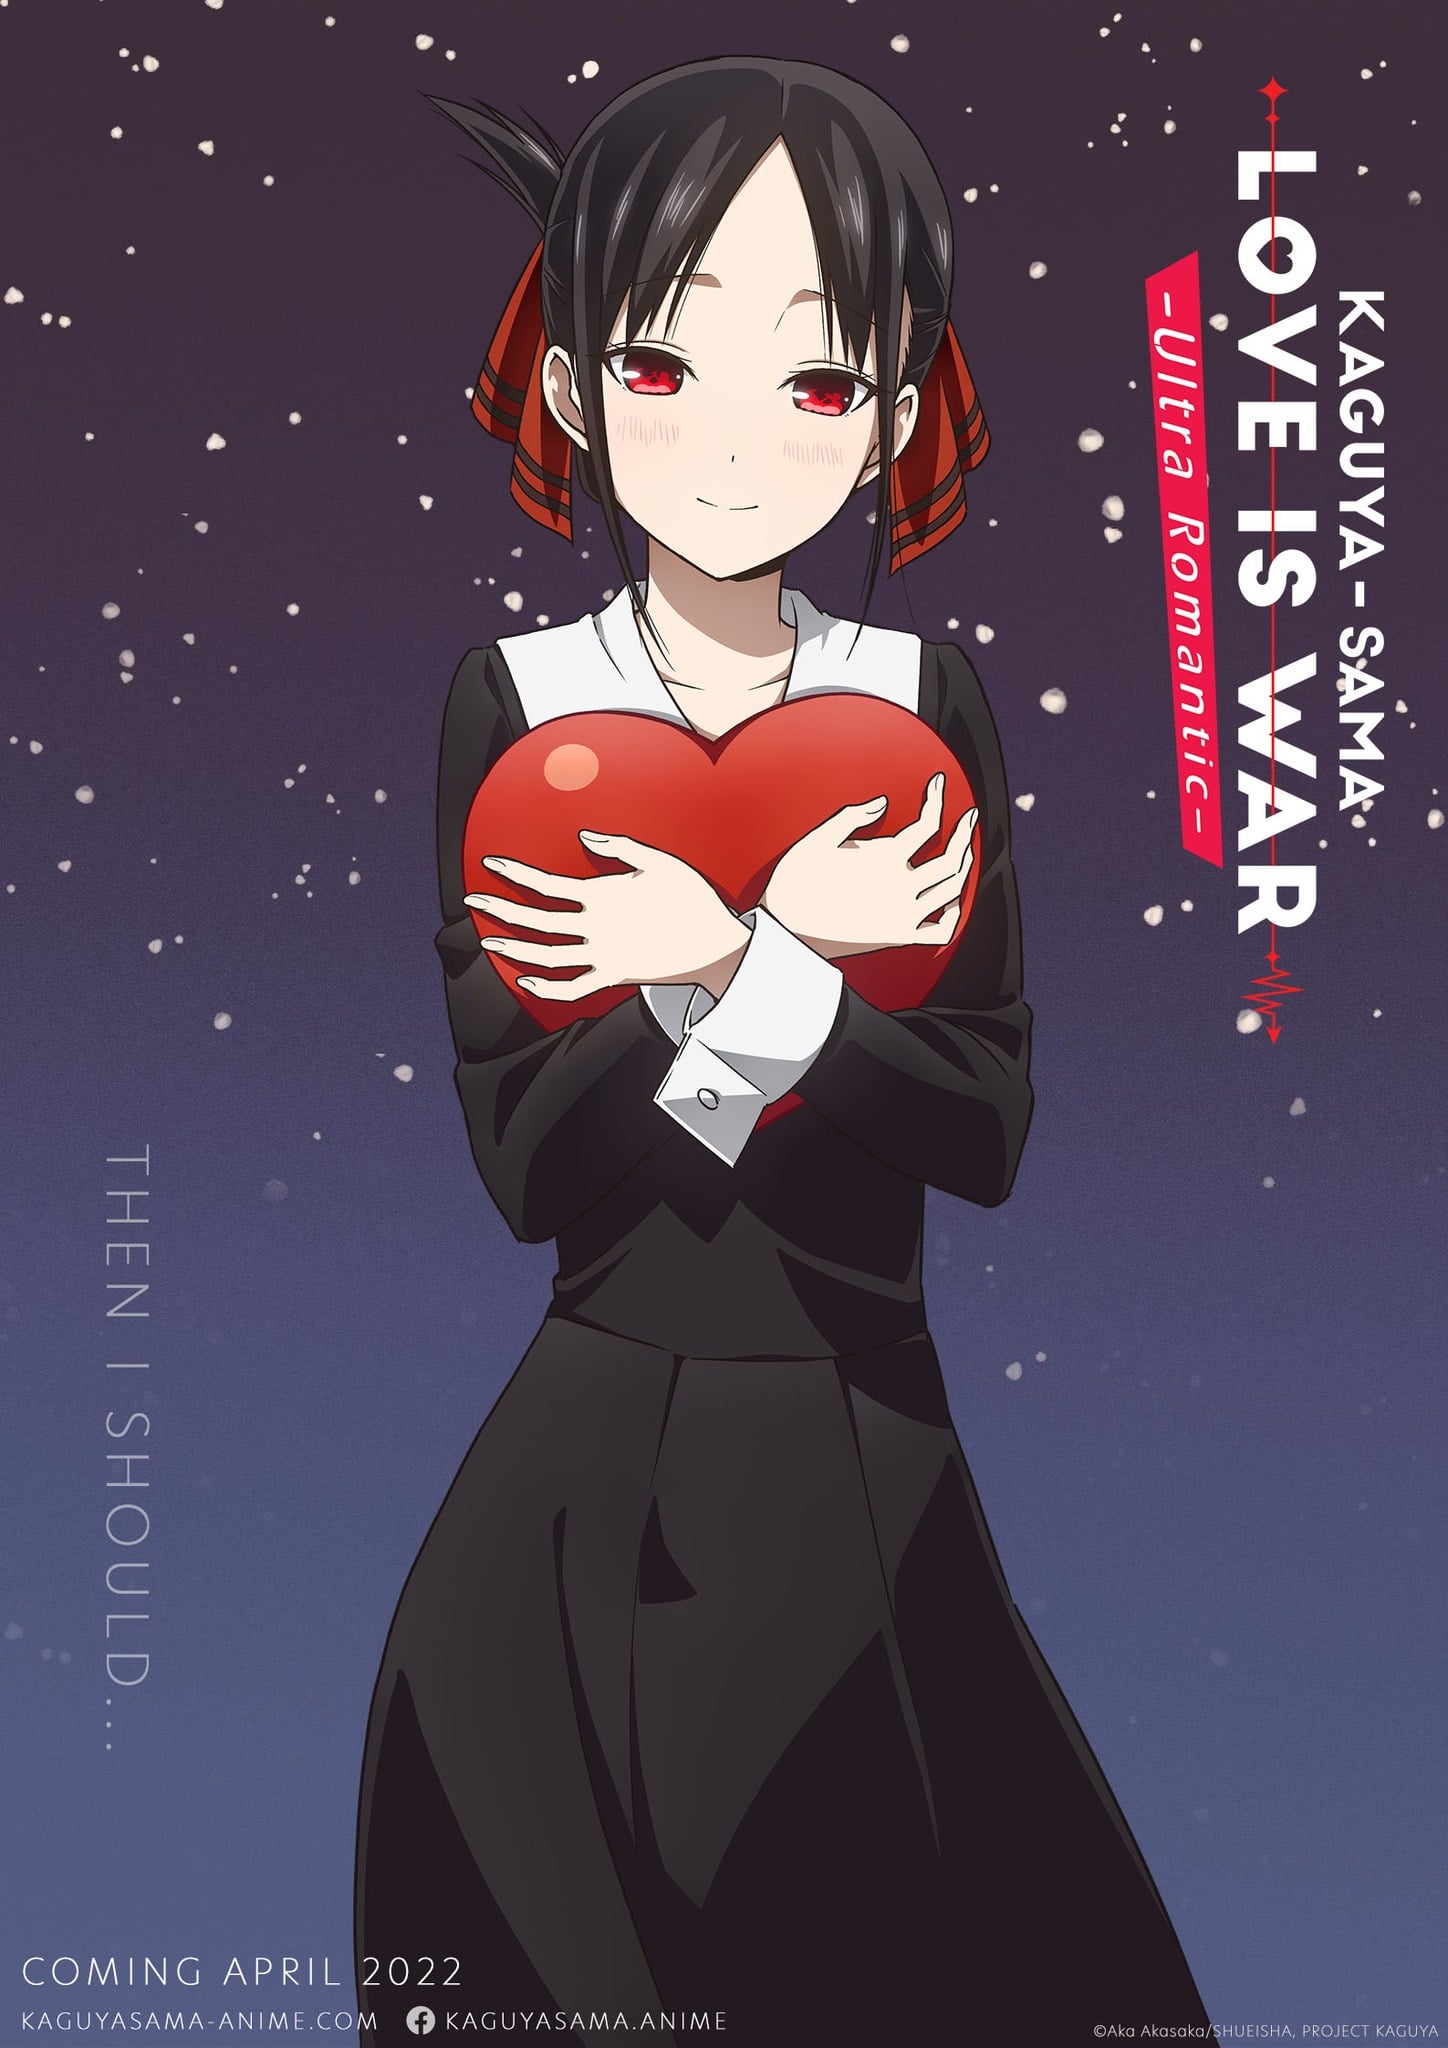 kaguya-sama love is war character